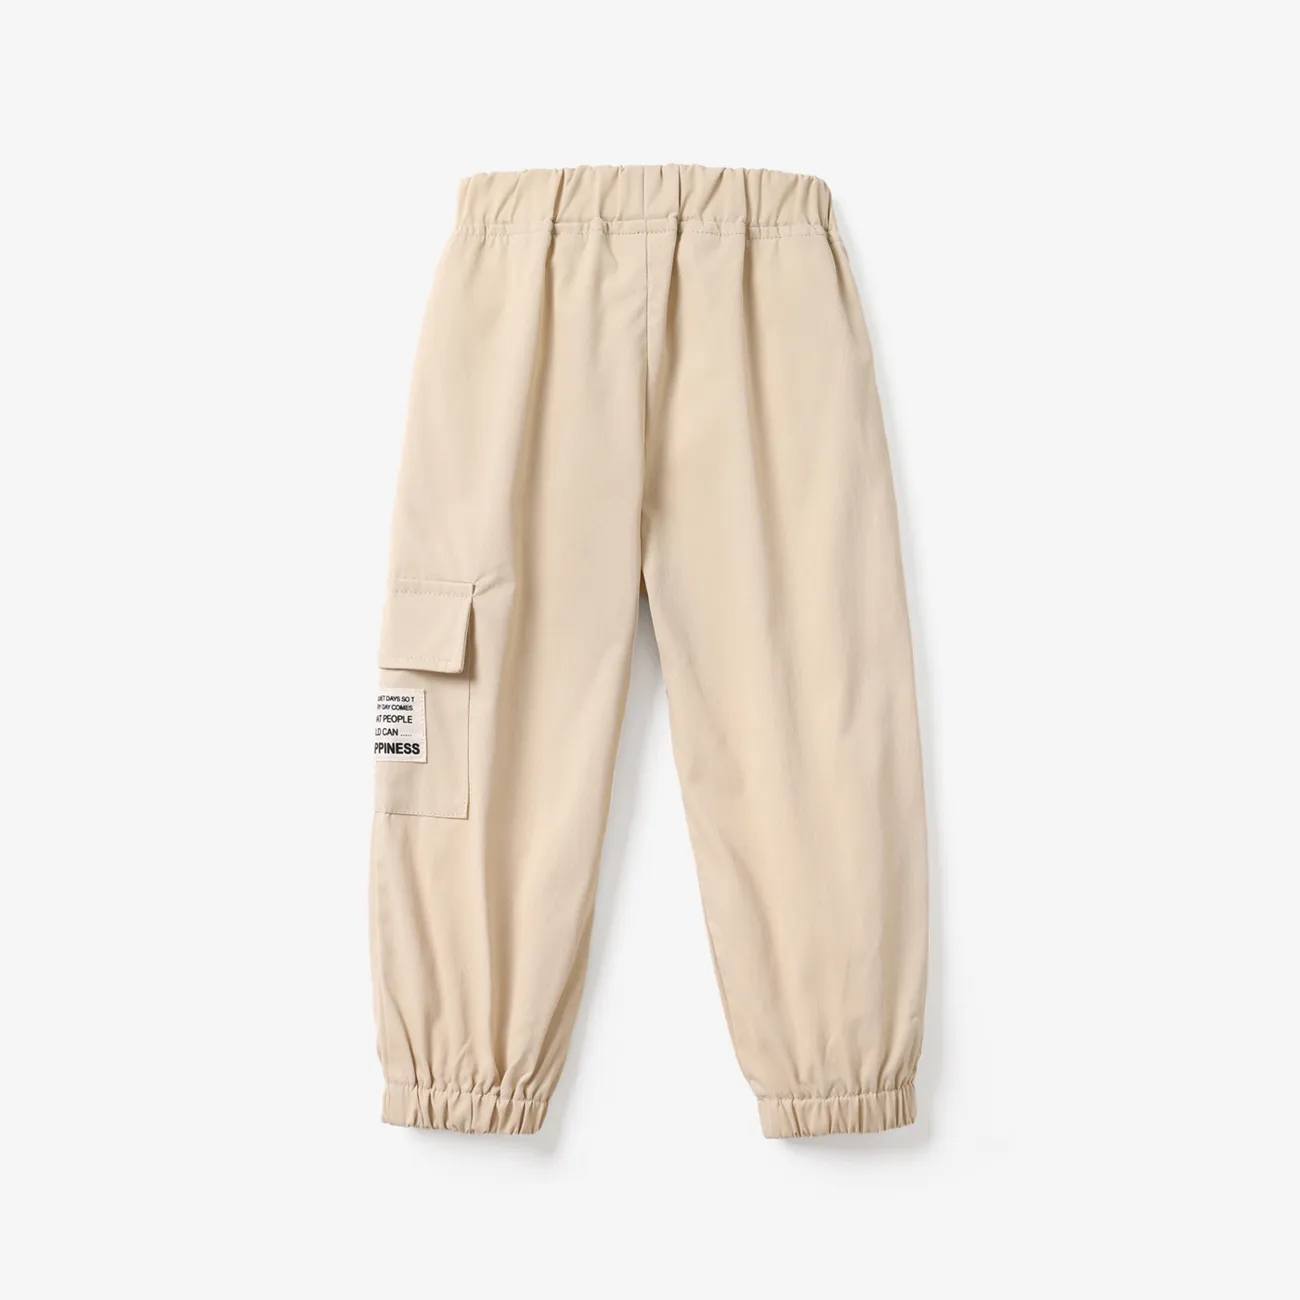 pantalones elásticos con diseño de bolsillo informal para niño pequeño Beige big image 1